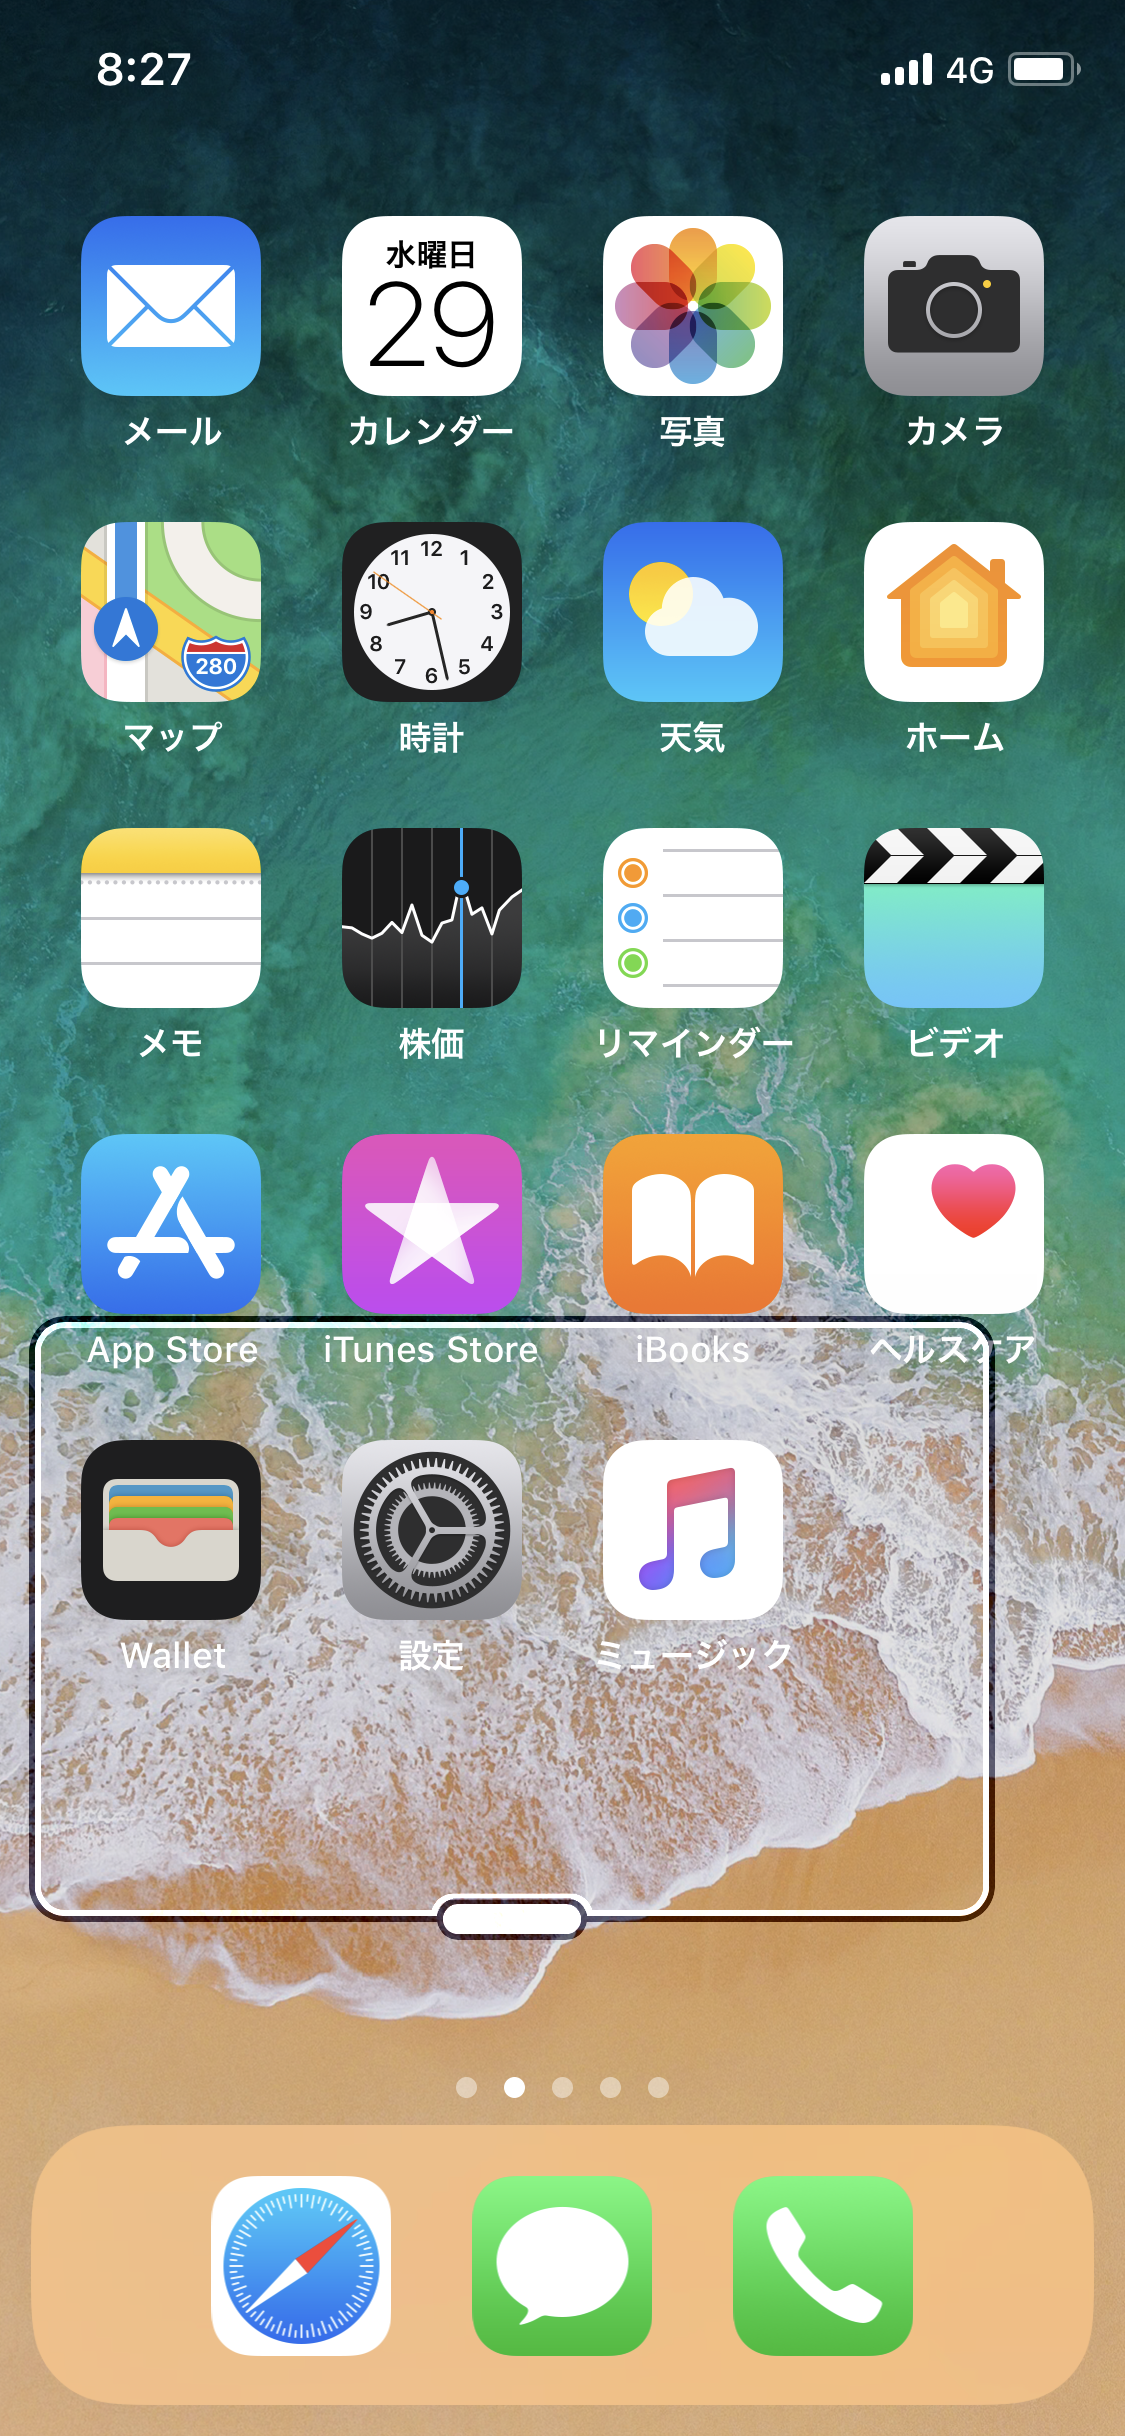 Iphoneで画面に変な枠が表示されるようになった 表示された枠を非表示にしたい Ipentec Com